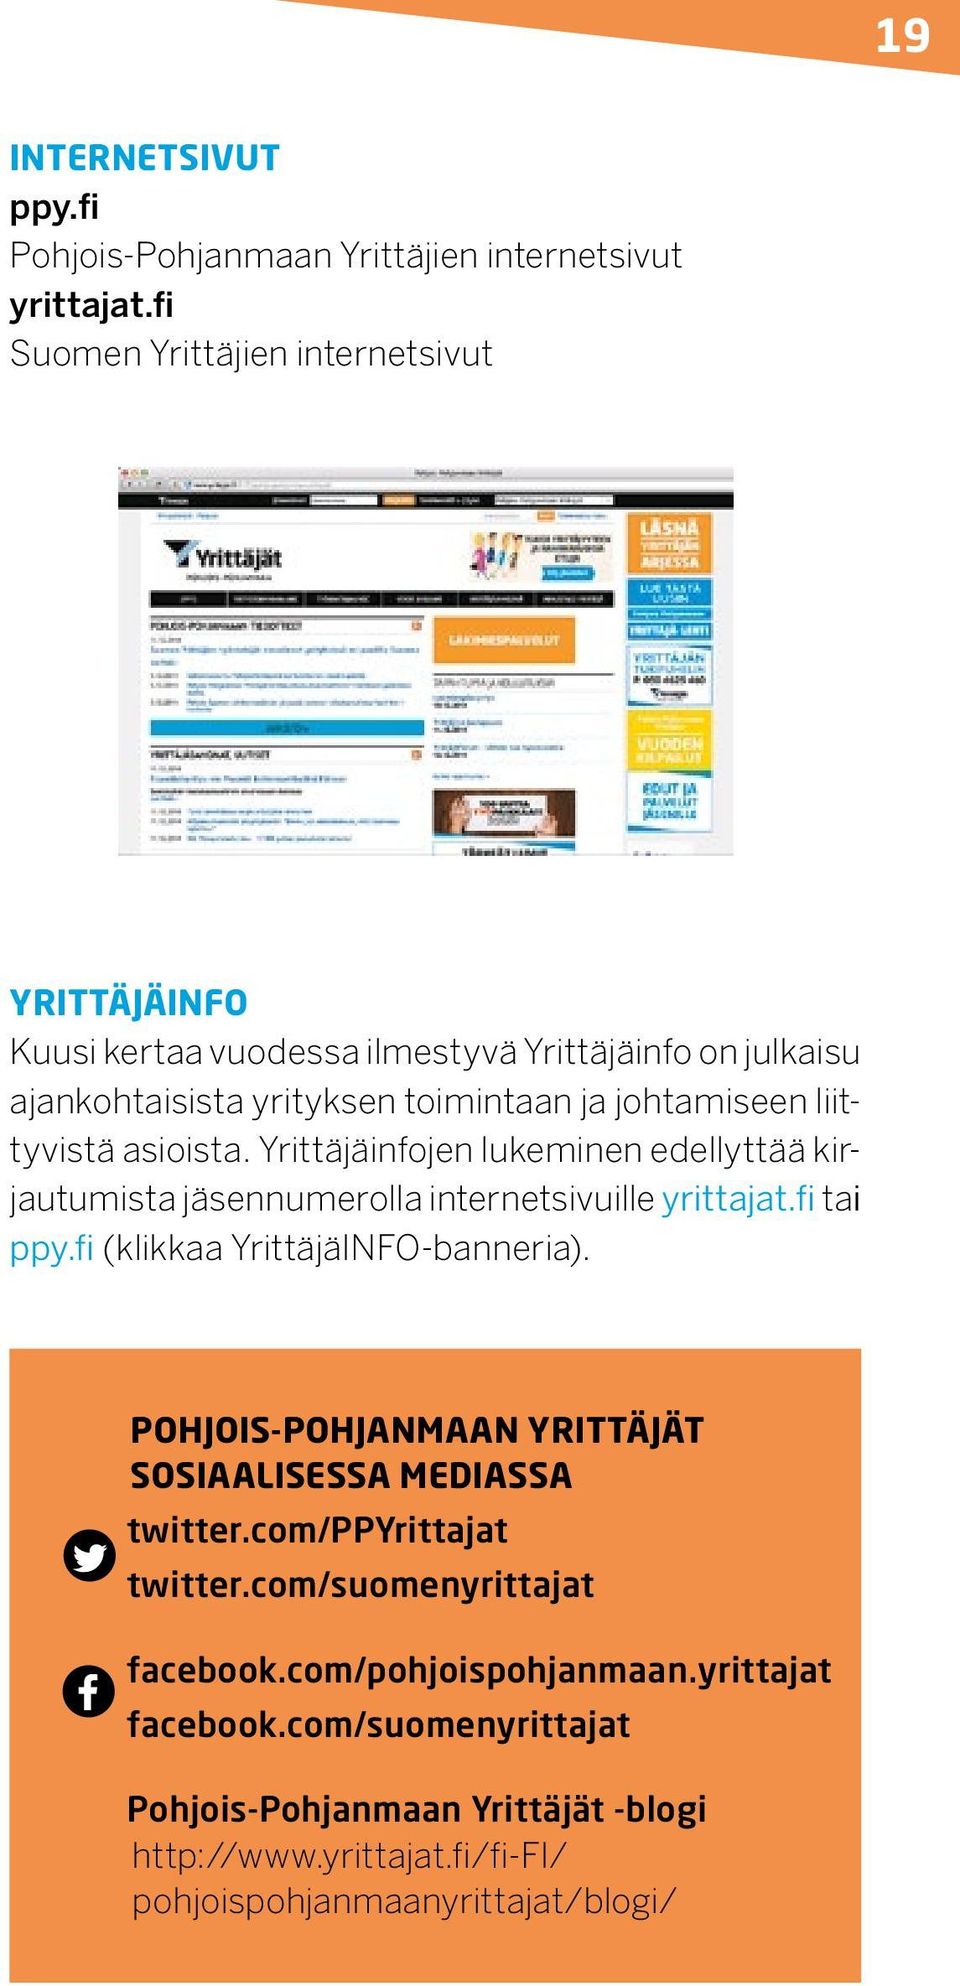 liittyvistä asioista. Yrittäjäinfojen lukeminen edellyttää kirjautumista jäsennumerolla internetsivuille yrittajat.fi tai ppy.fi (klikkaa YrittäjäINFO-banneria).